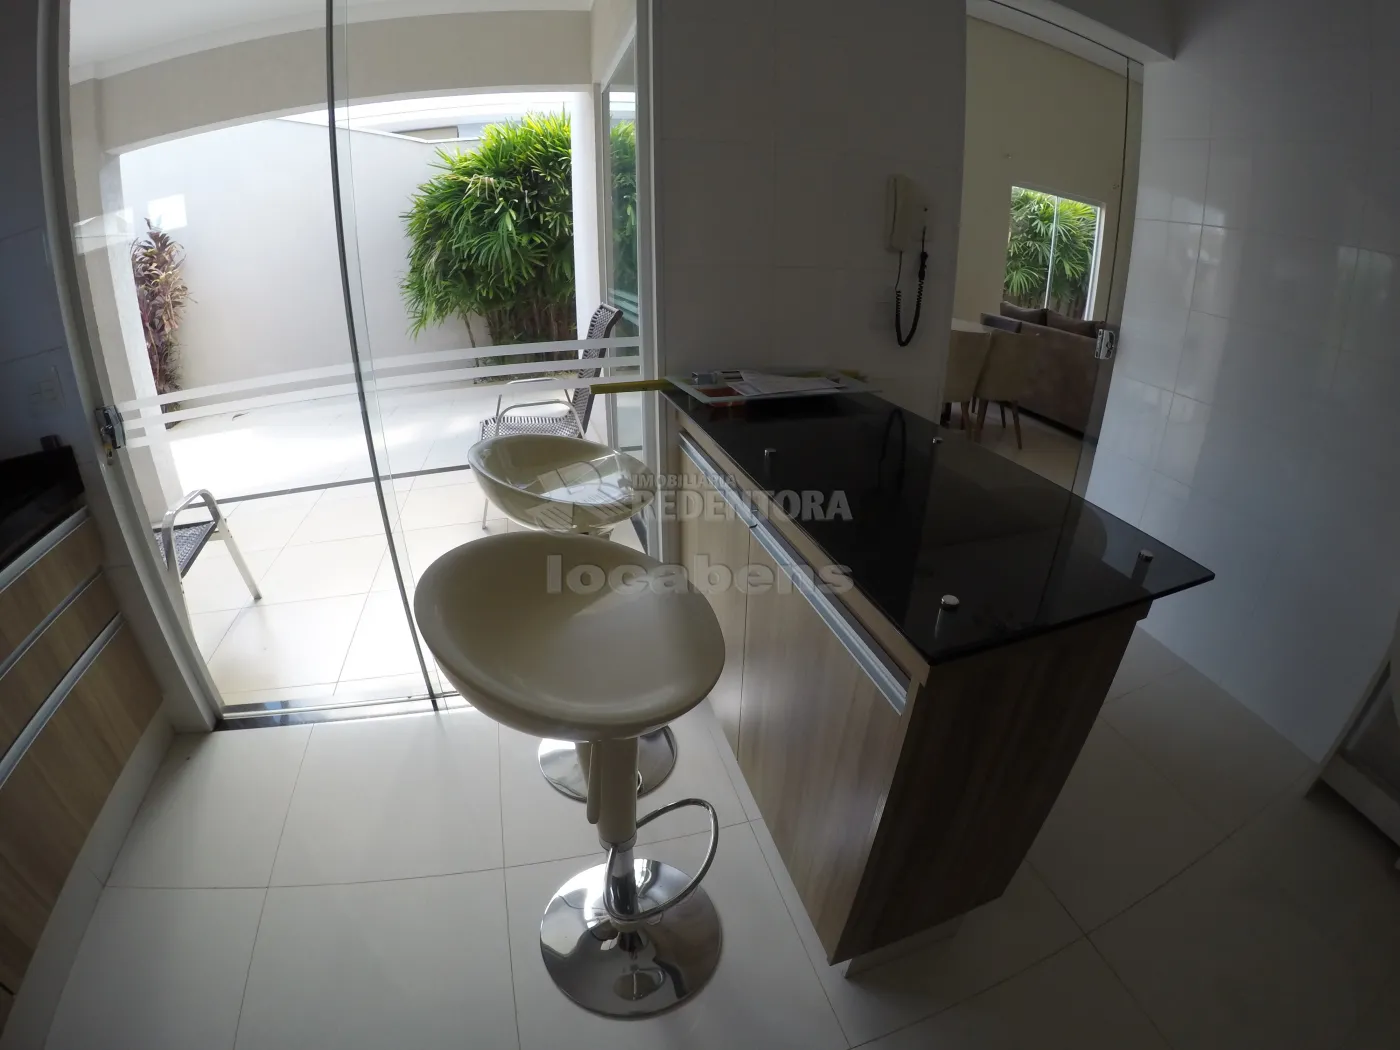 Comprar Casa / Condomínio em Mirassol apenas R$ 900.000,00 - Foto 27